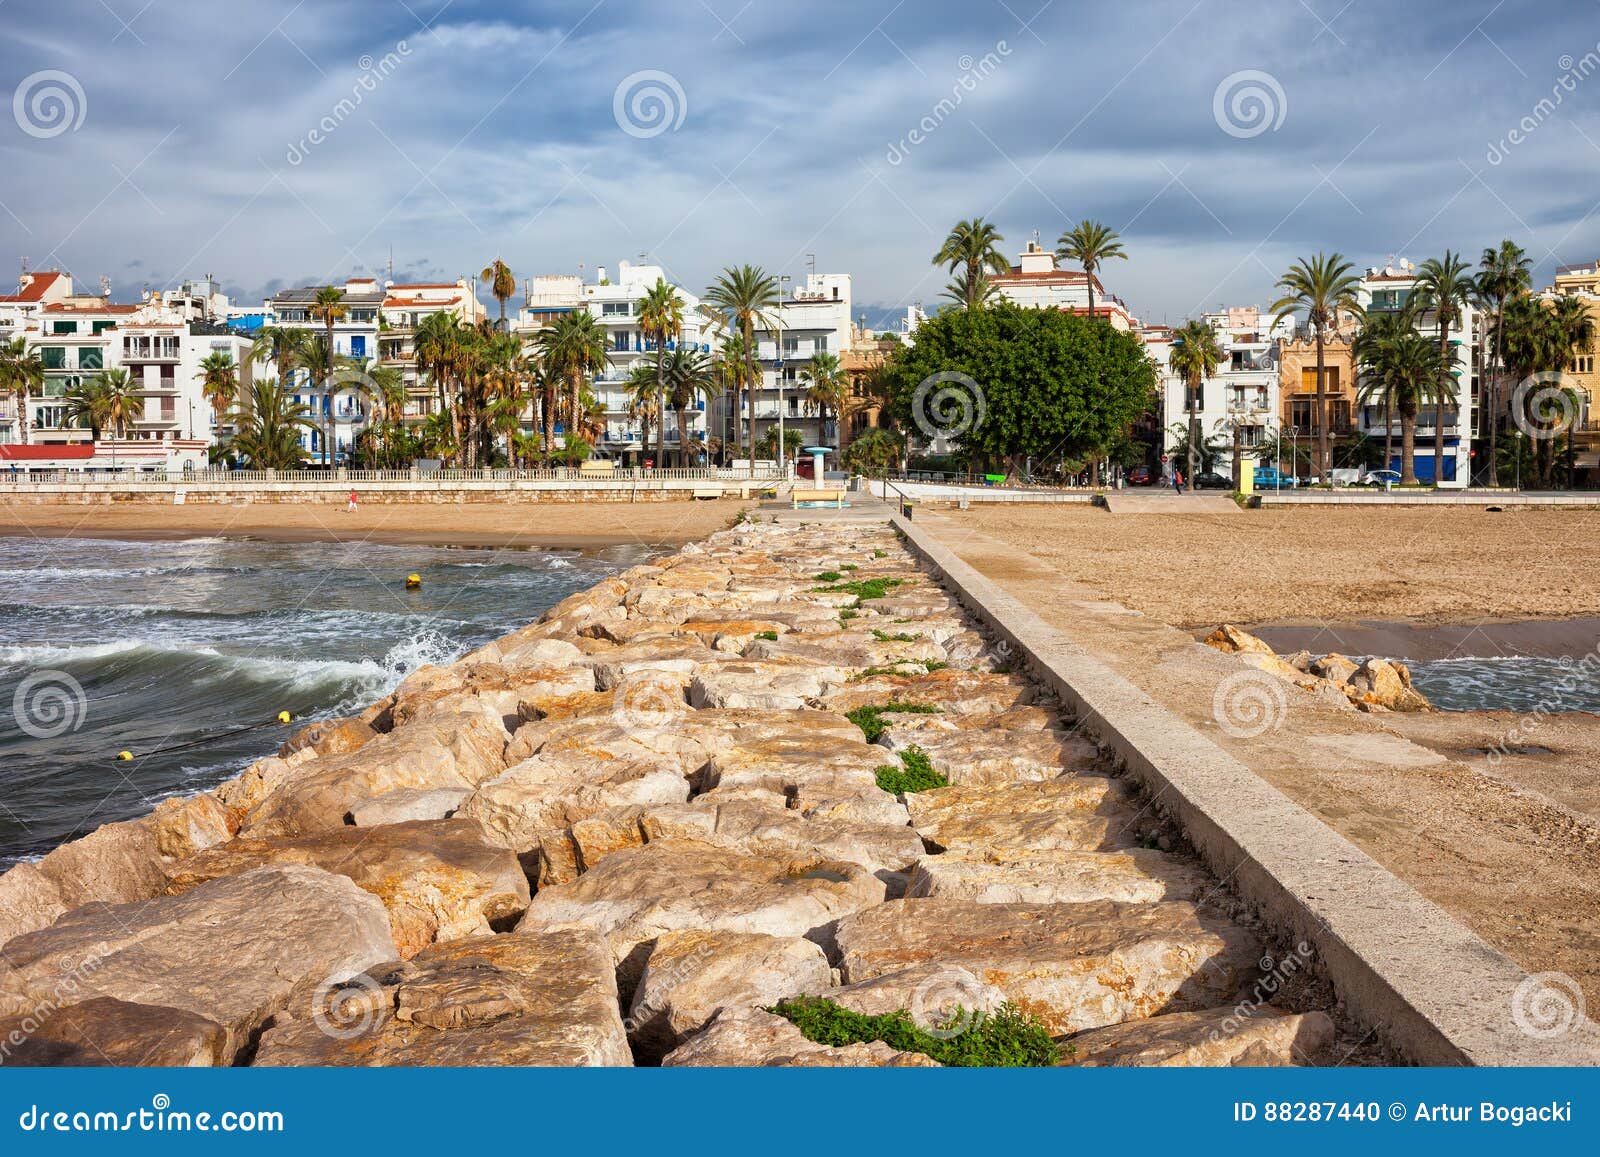 Estância turística de Sitges na Espanha. Cidade de estância balnear de Sitges na Espanha, na skyline e na praia de um cais do mar